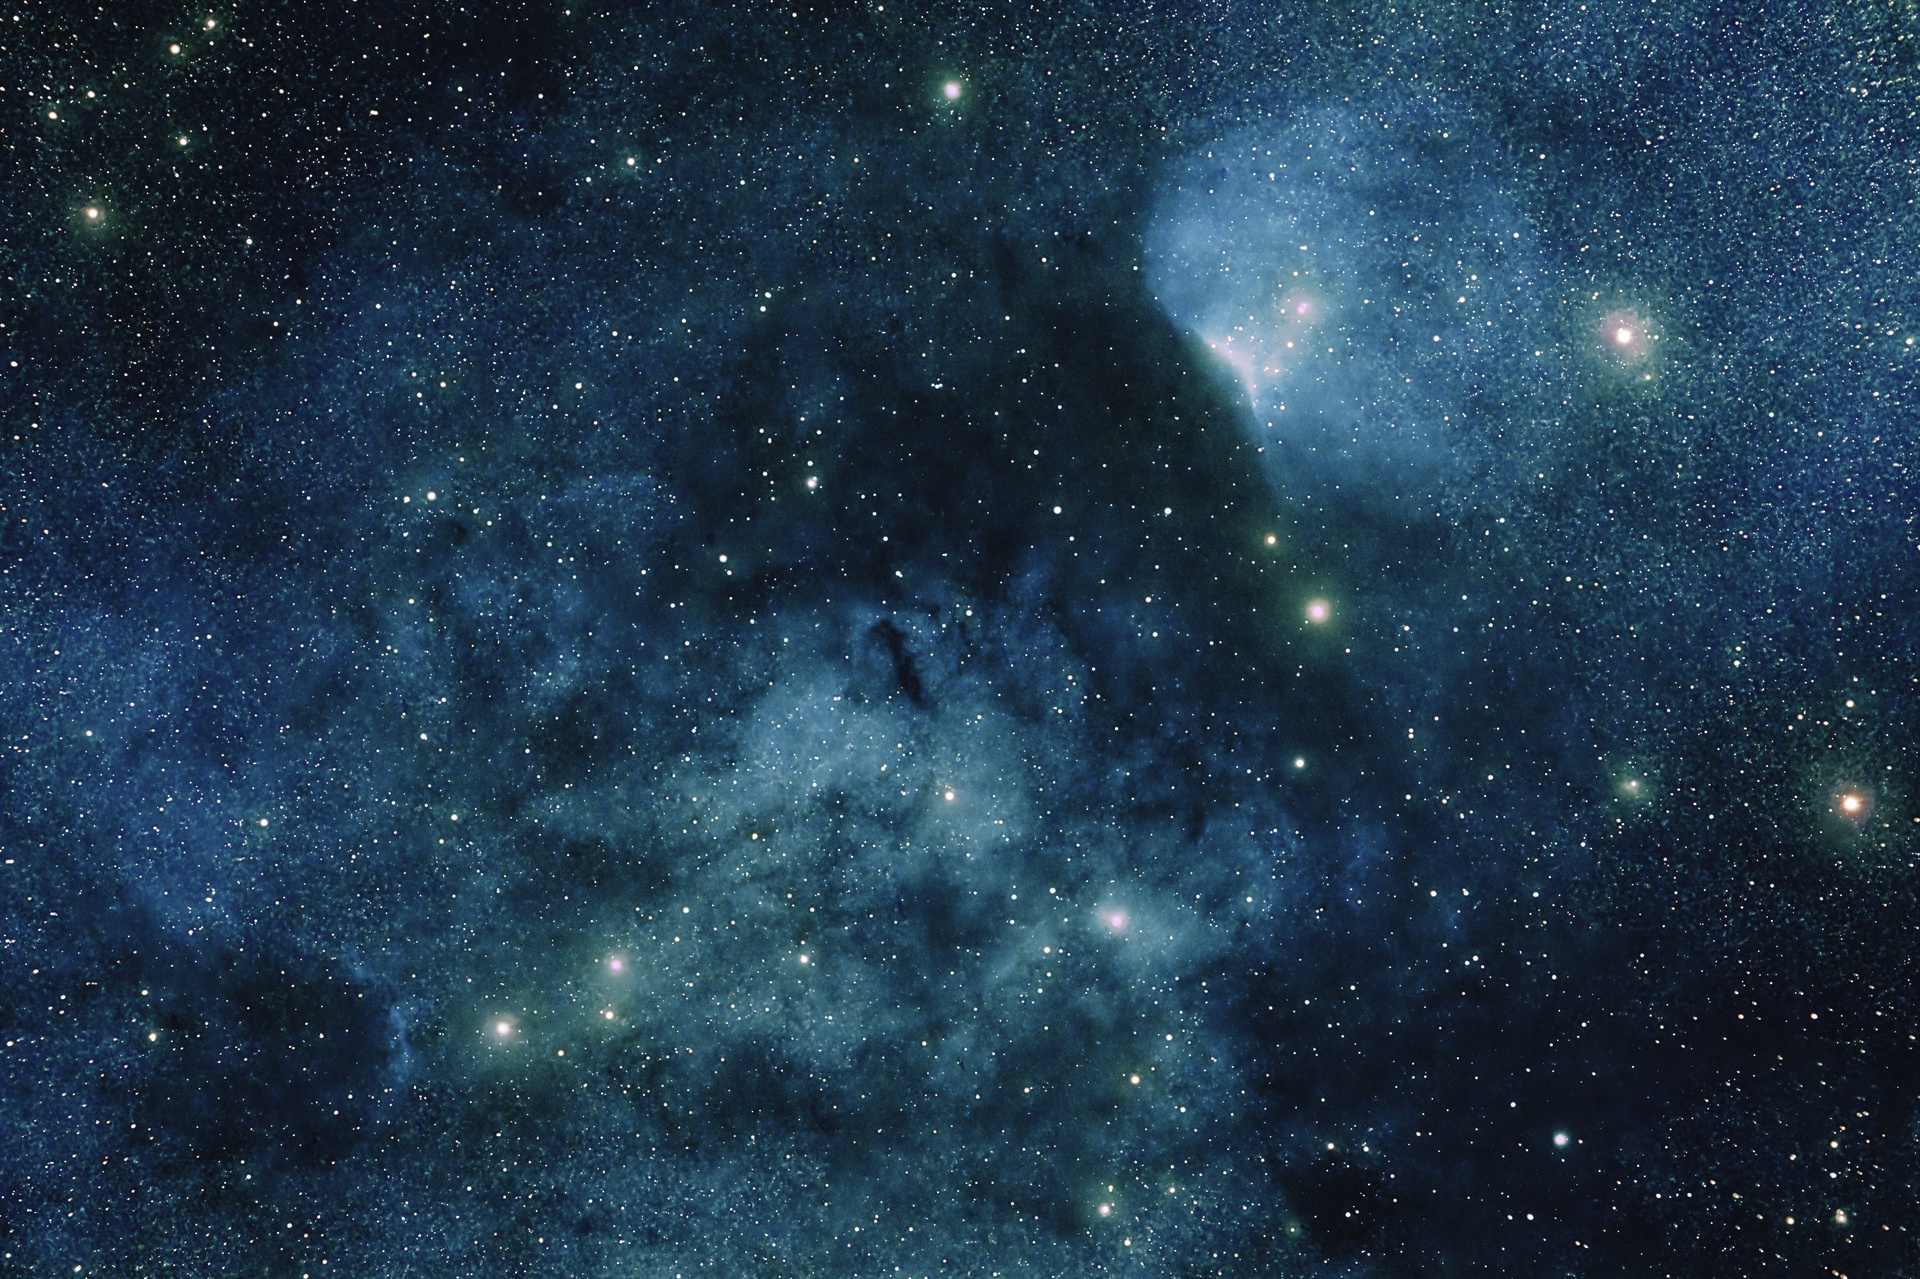 Paint the Sky with Stars: Sh2-140, Cepheus